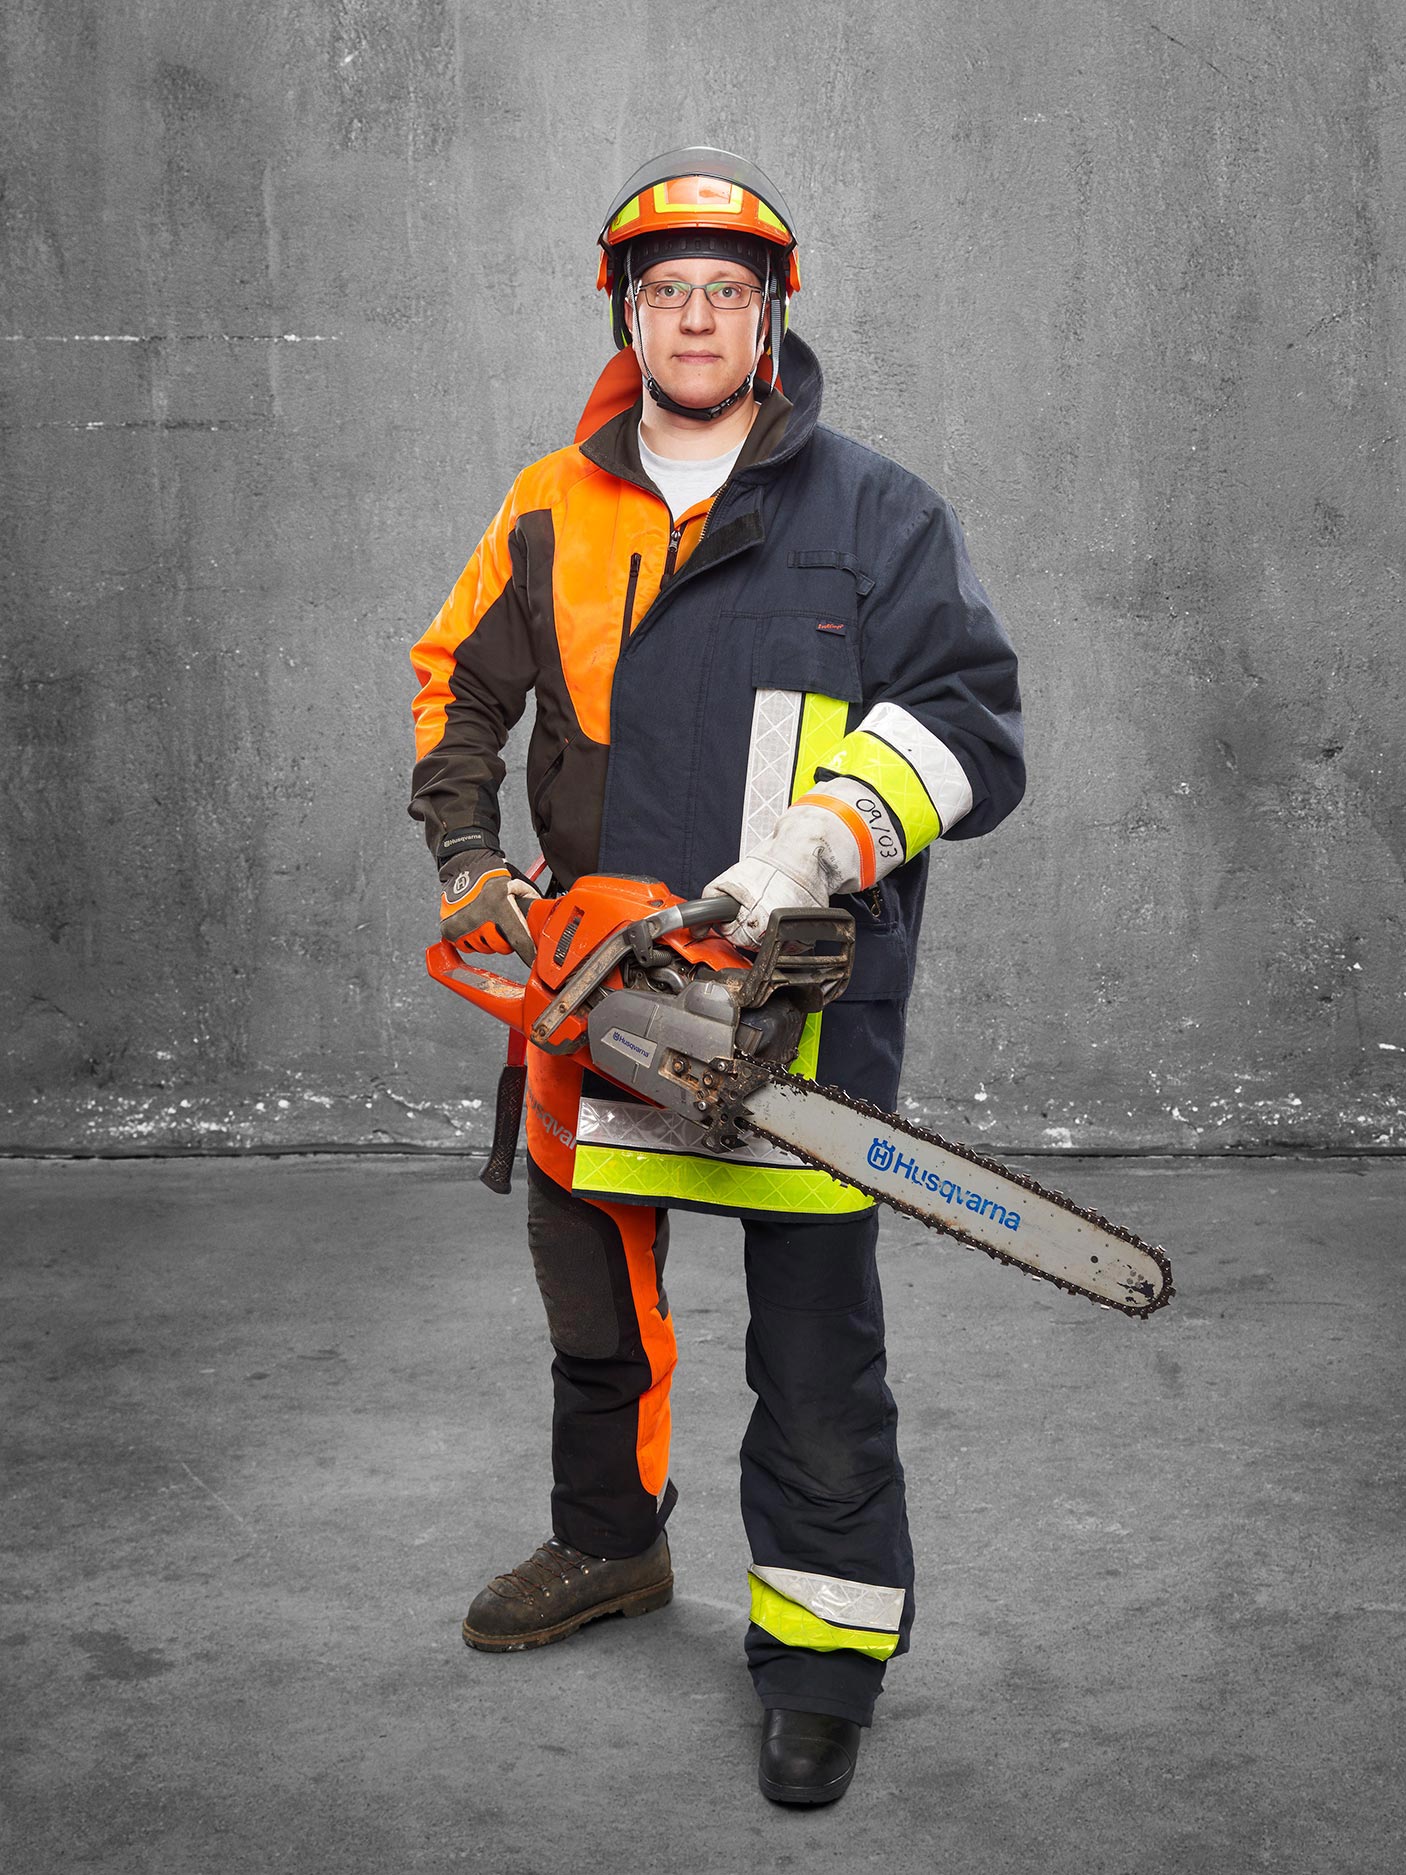 FeuerwehrMenschen Werkzeugmacher ist Brandbekämpfer